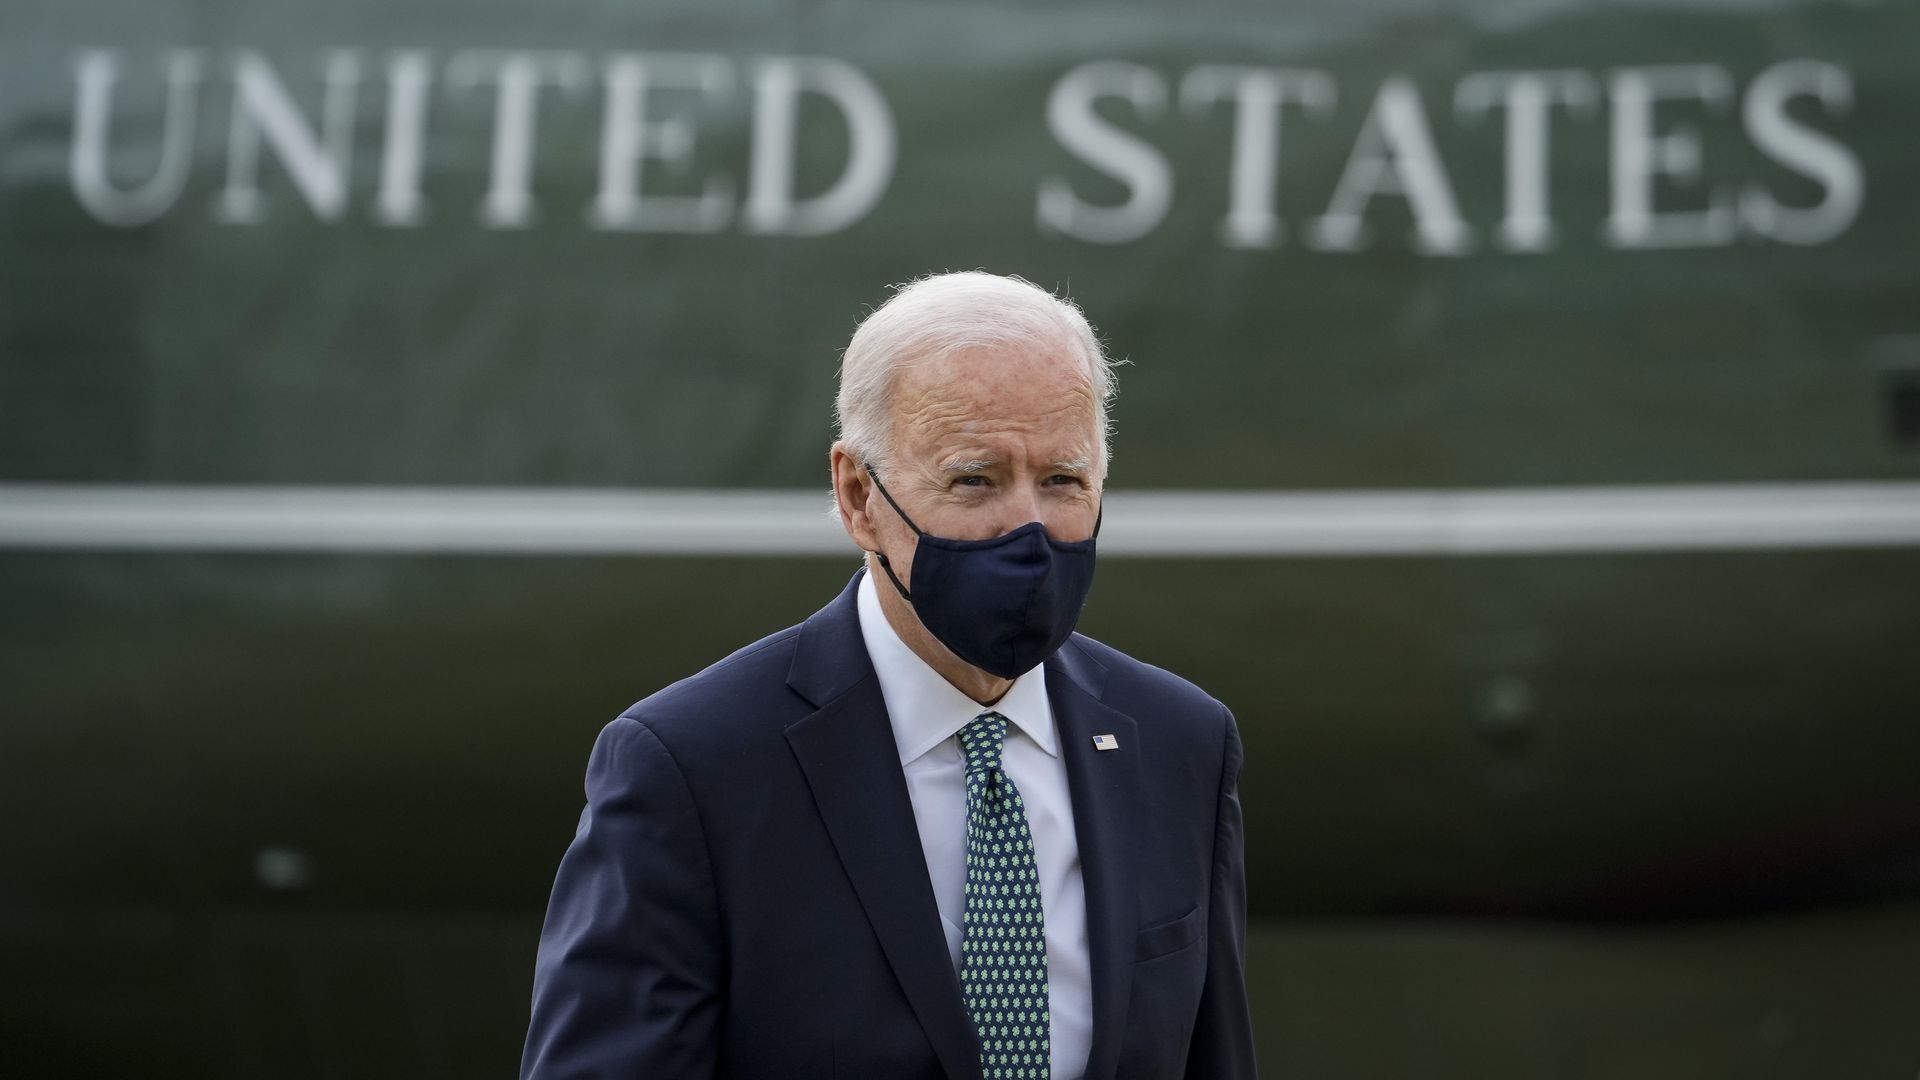 President Biden is seen walking in front of the words 